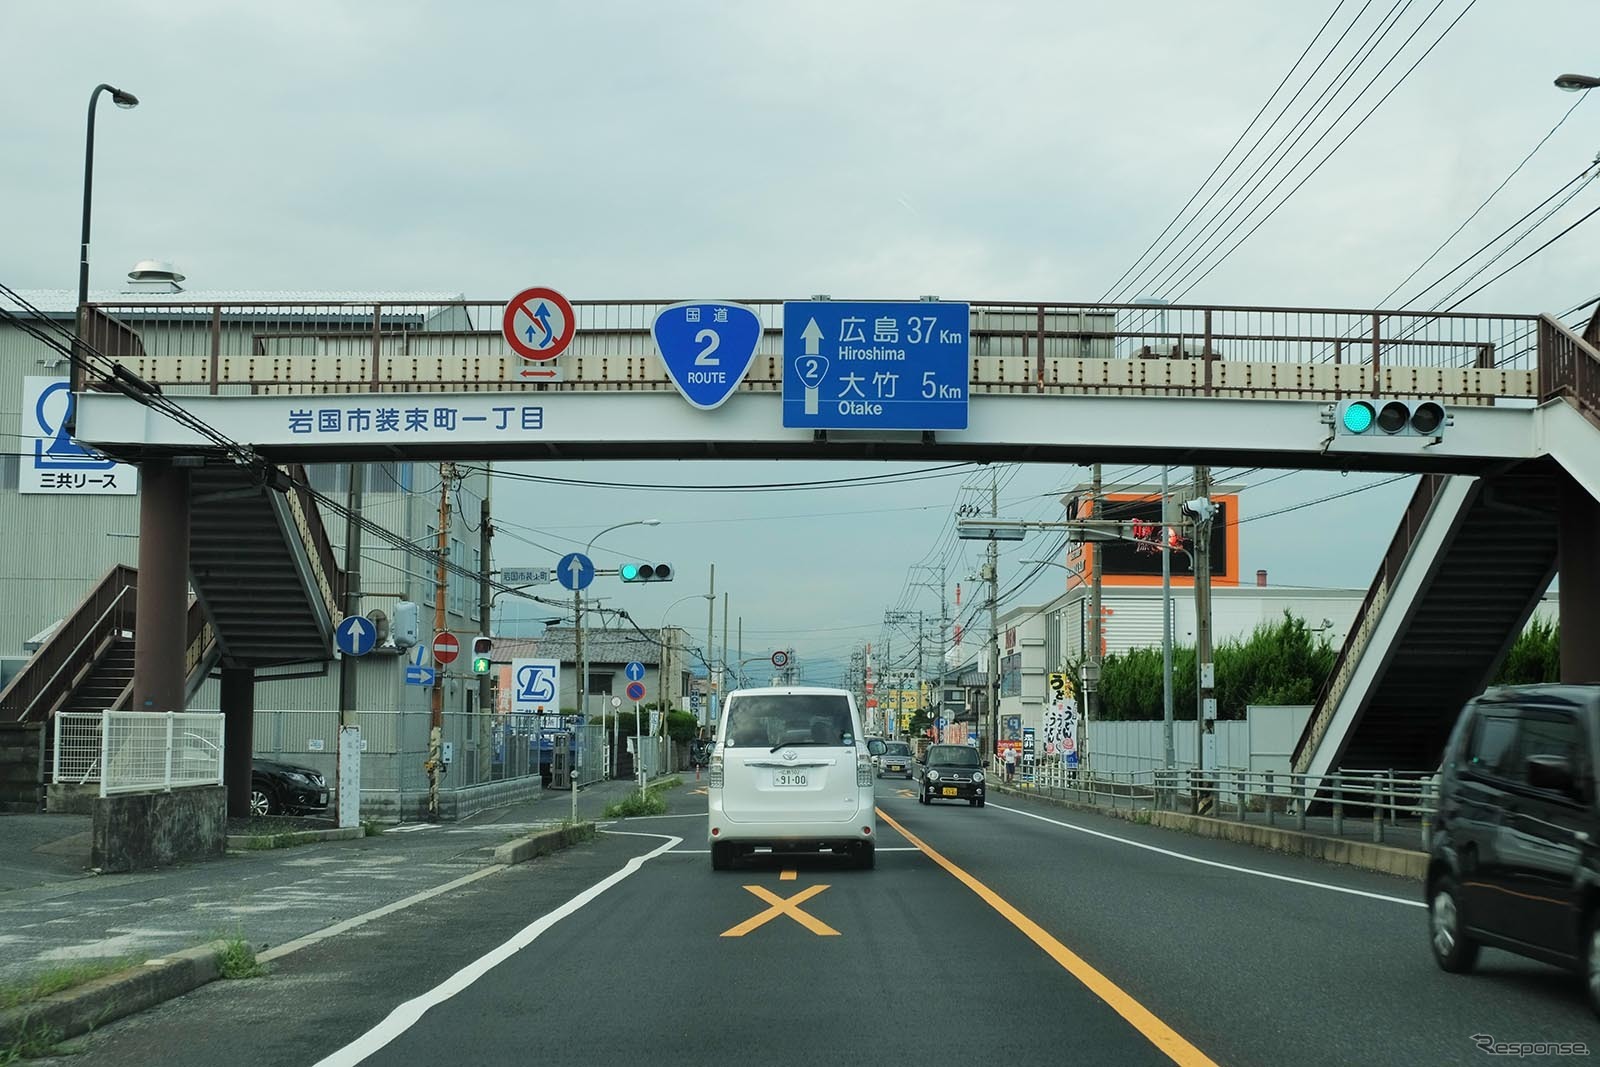 山口・岩国で道路構造の悪さに起因する動かないほどの渋滞に1時間以上巻き込まれる。バイパスもないため岩国から広島の廿日市までは高速で迂回したほうが得策。